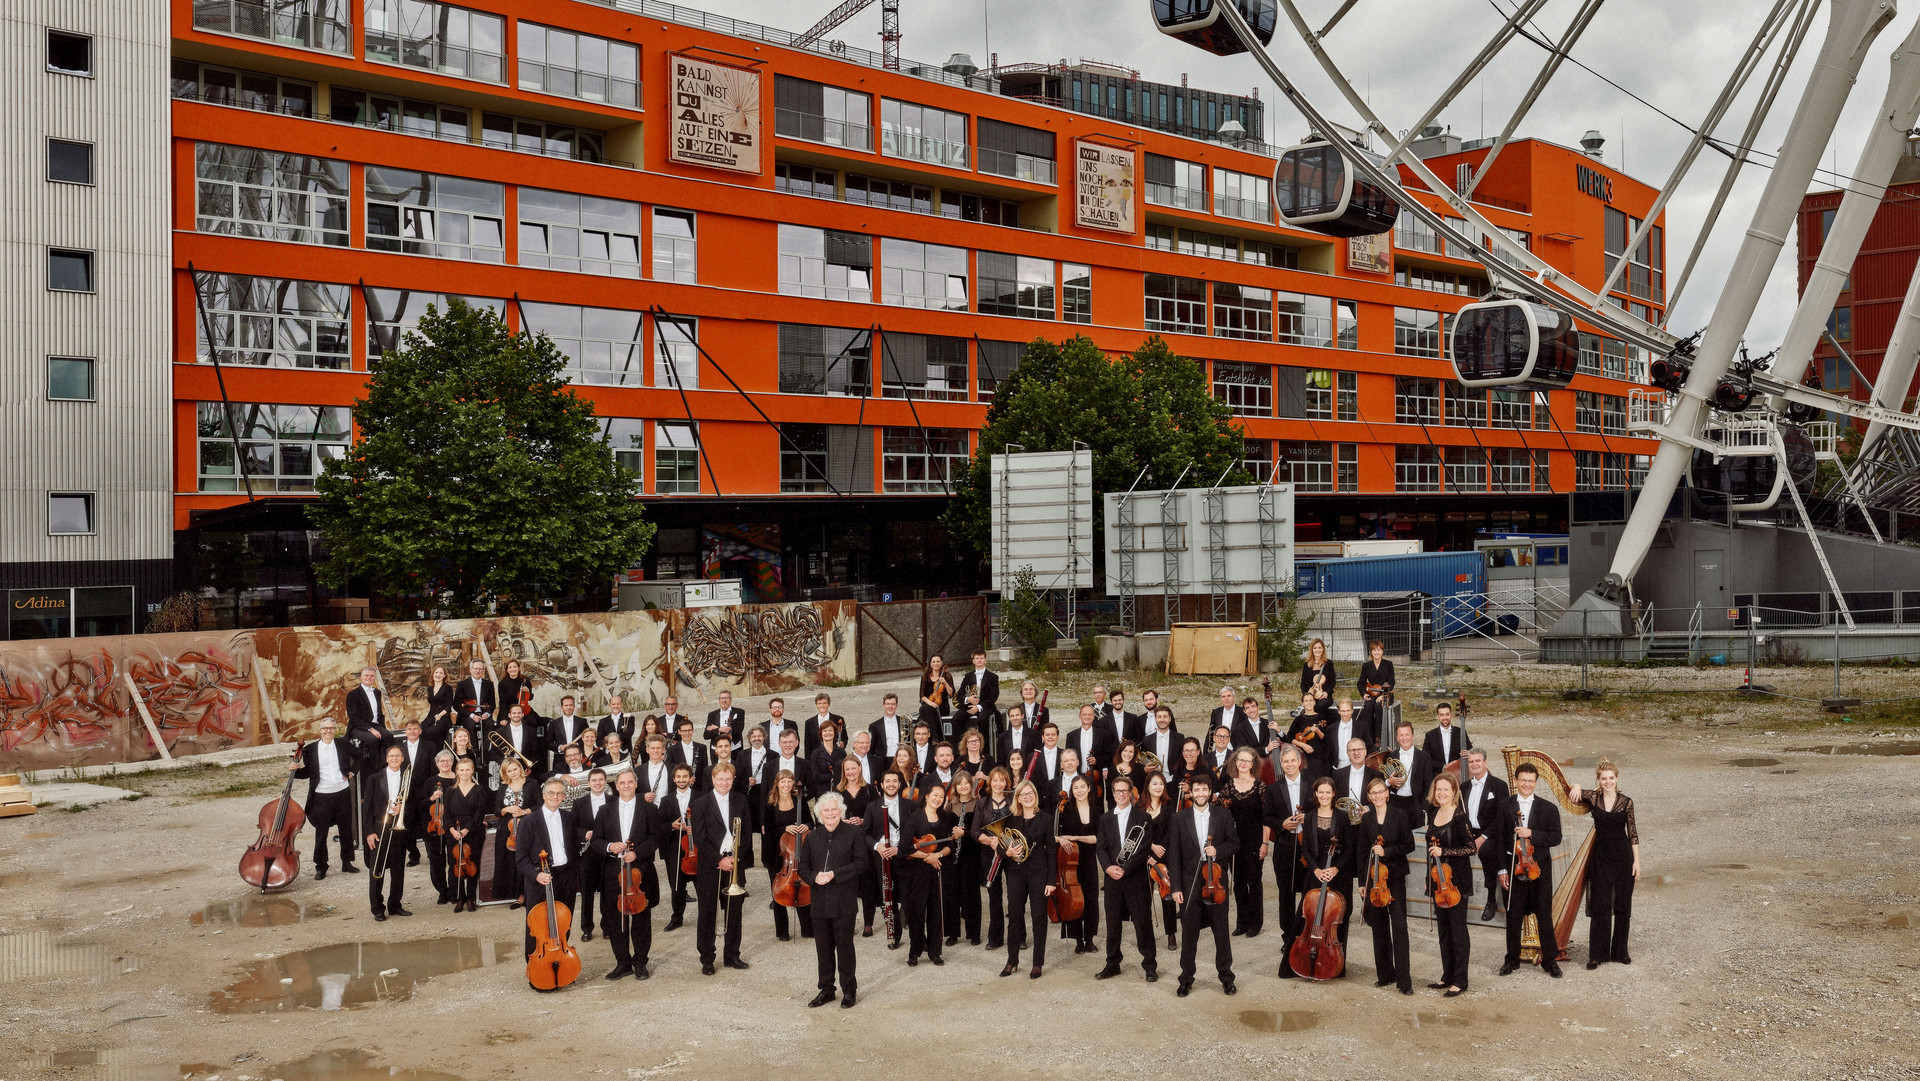 Symphonieorchester des Bayerischen Rundfunks unter der Künstlerischen Leitung von Sir Simon Rattle / Copyright: ZDF/BR, Astrid Ackermann